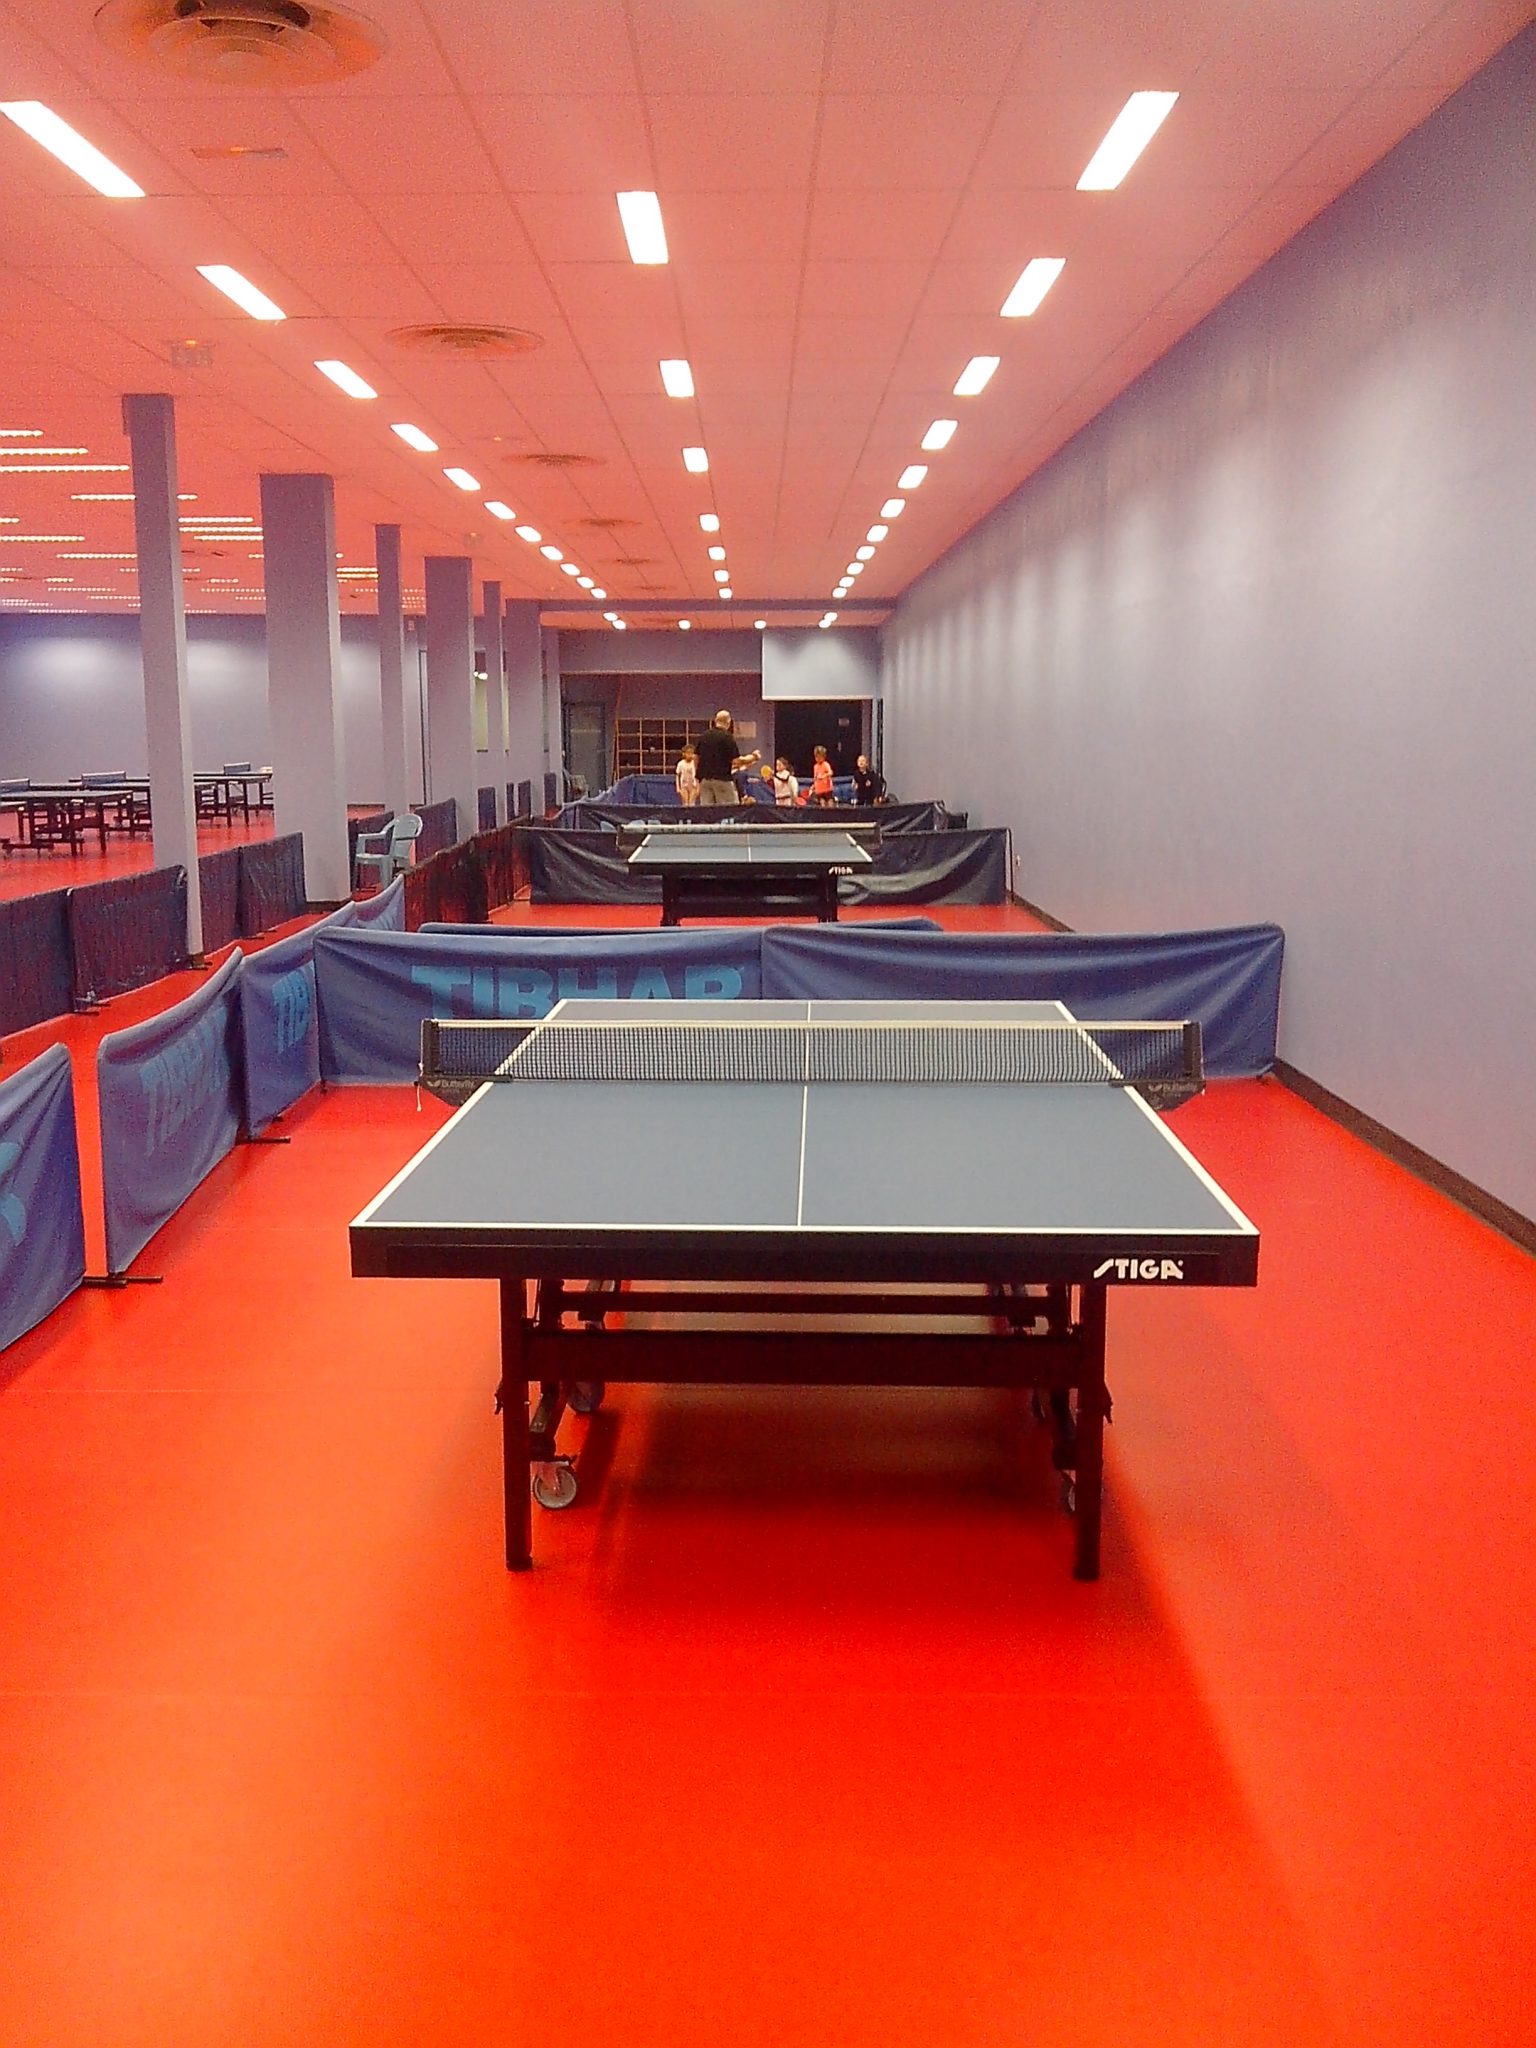 Le club de Rueil Malmaison s'équipe d'une des plus belles salles de Tennis  de Table en France - Ping Pong et Tennis de Table